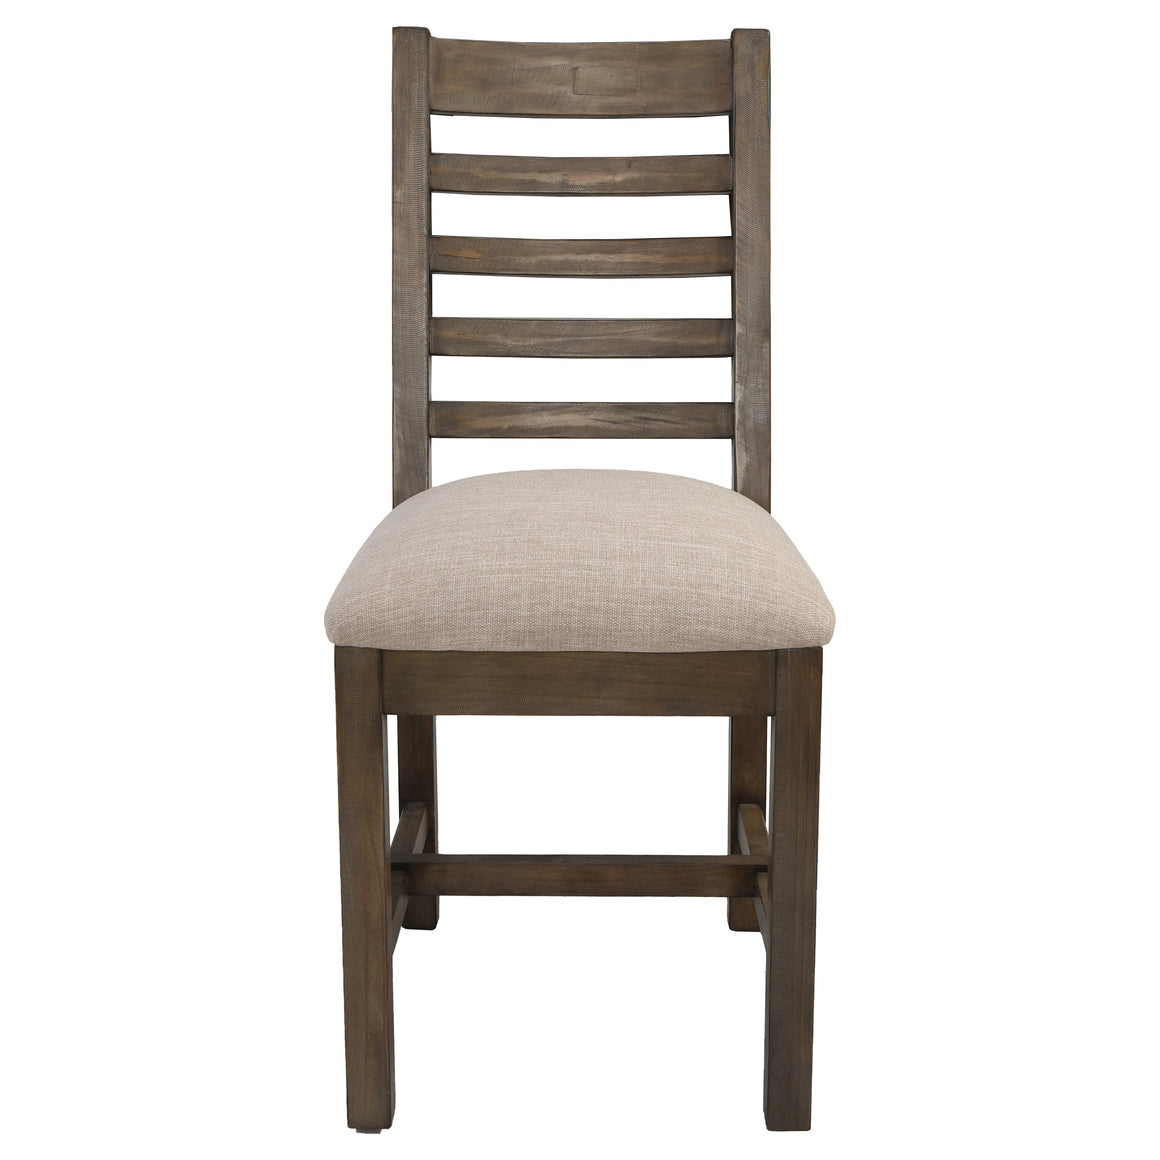 Caleb Dining Chairs - Desert Gray